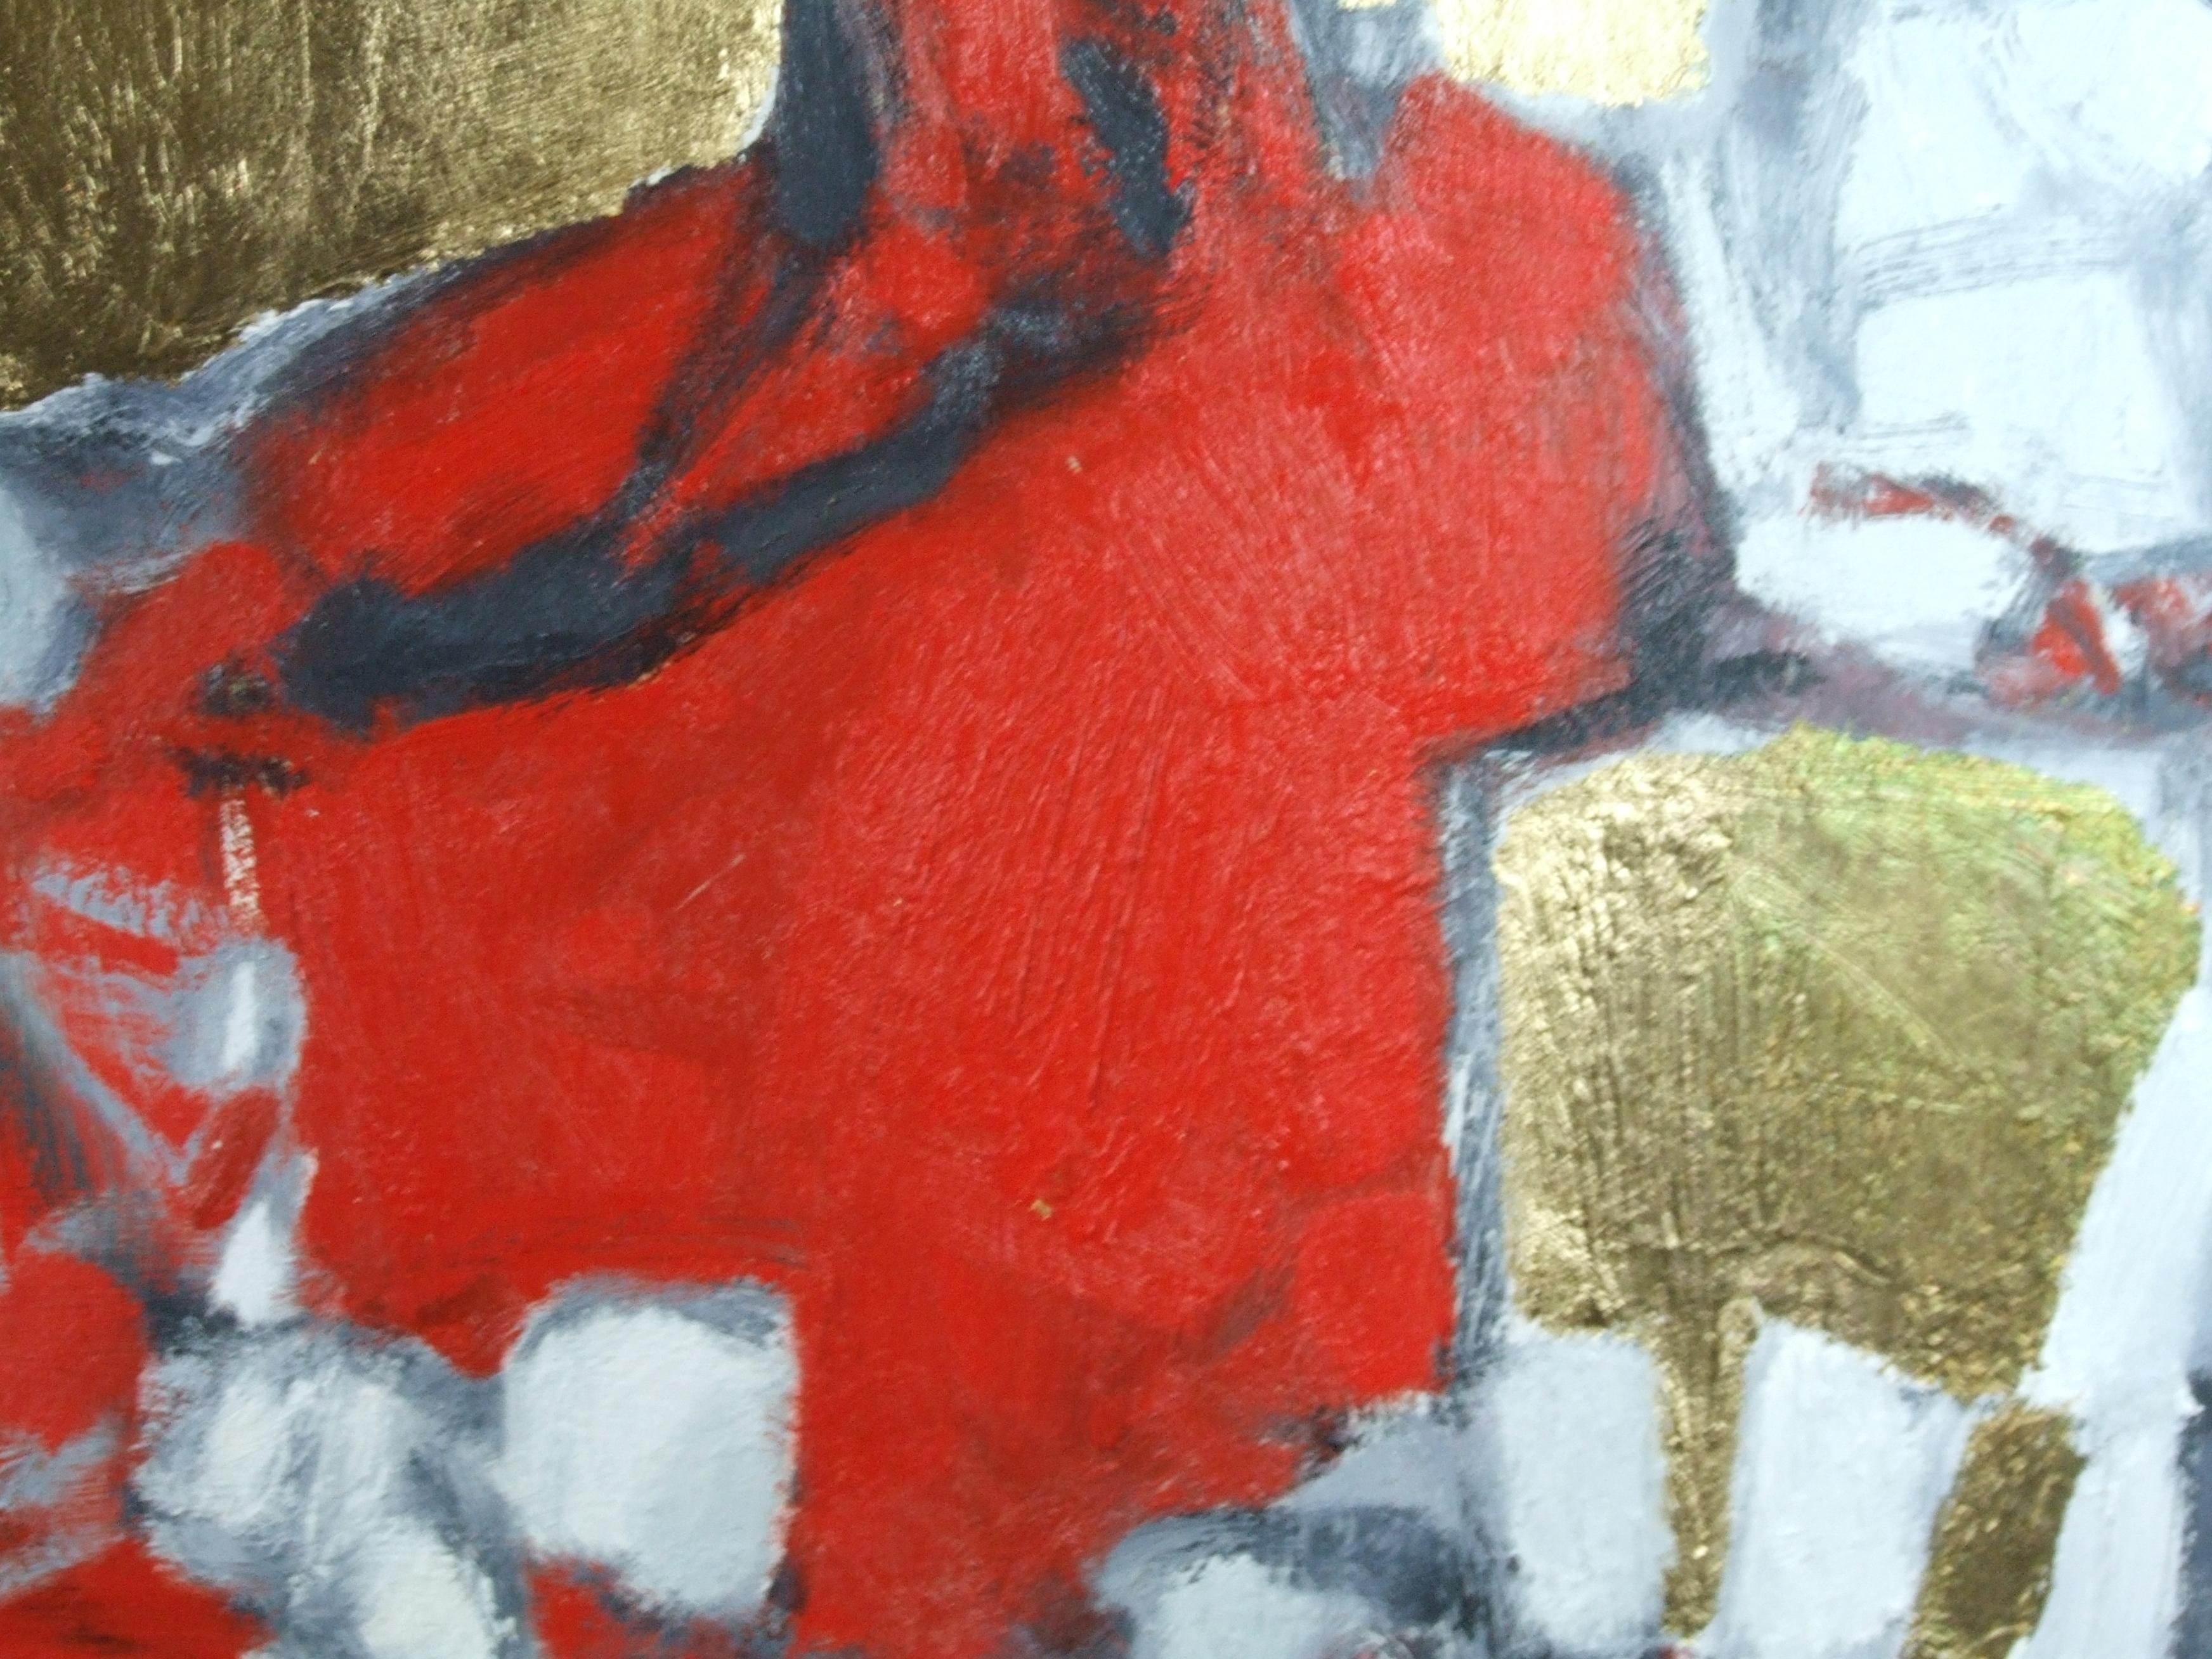 La robe rouge, 2006 - Huile sur toile, 60x50 cm. - Marron Figurative Painting par Smirnoff Andrej